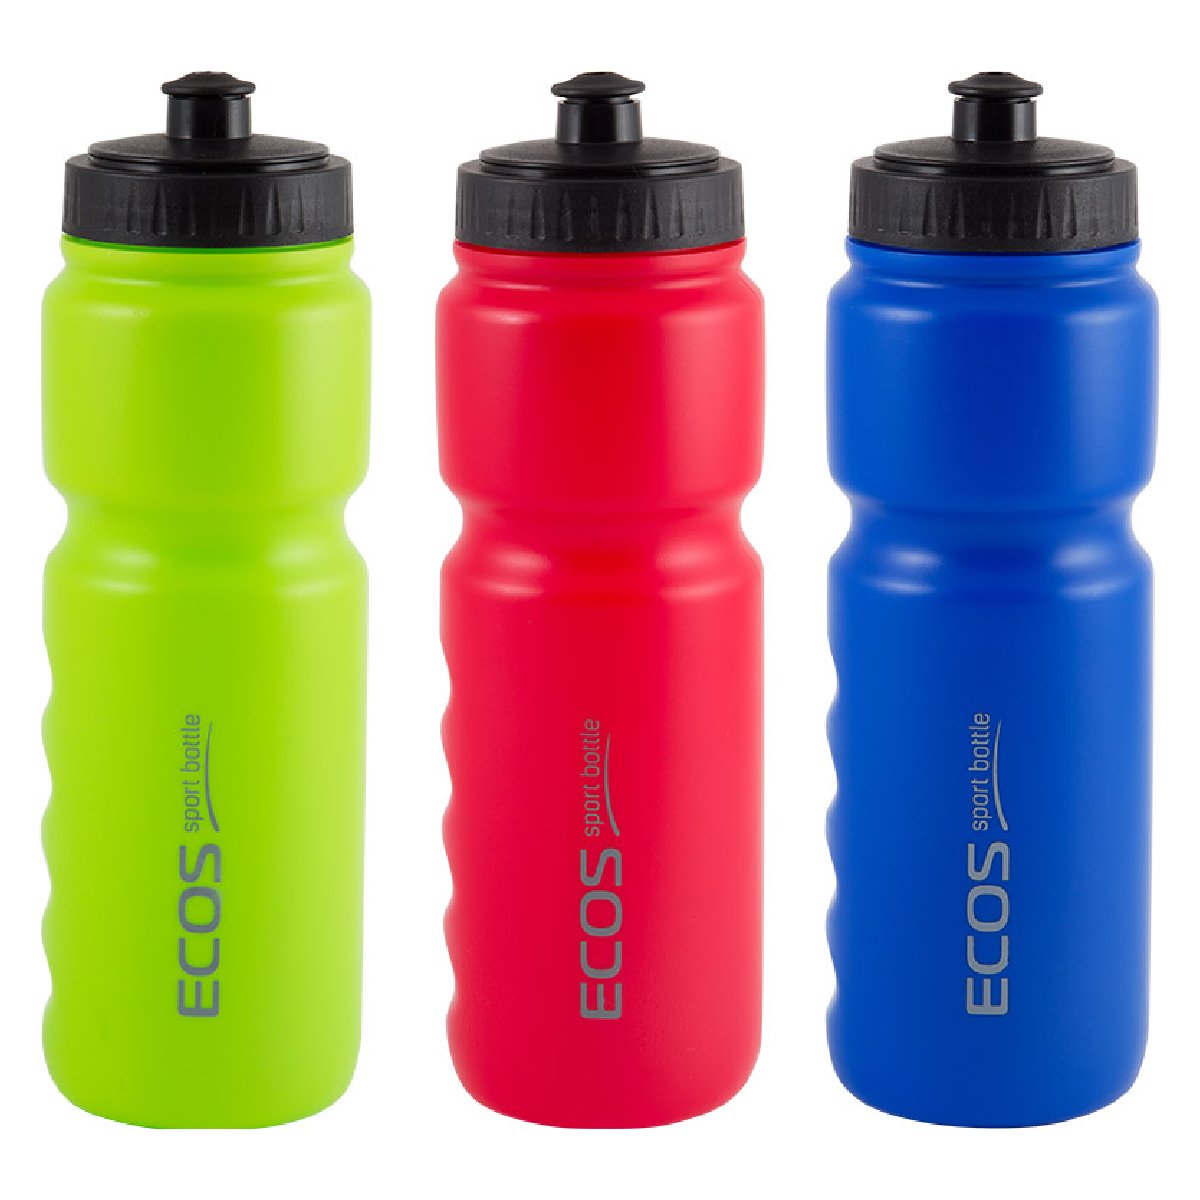 Велосипедная бутылка для воды ECOS HG-2015, 850мл